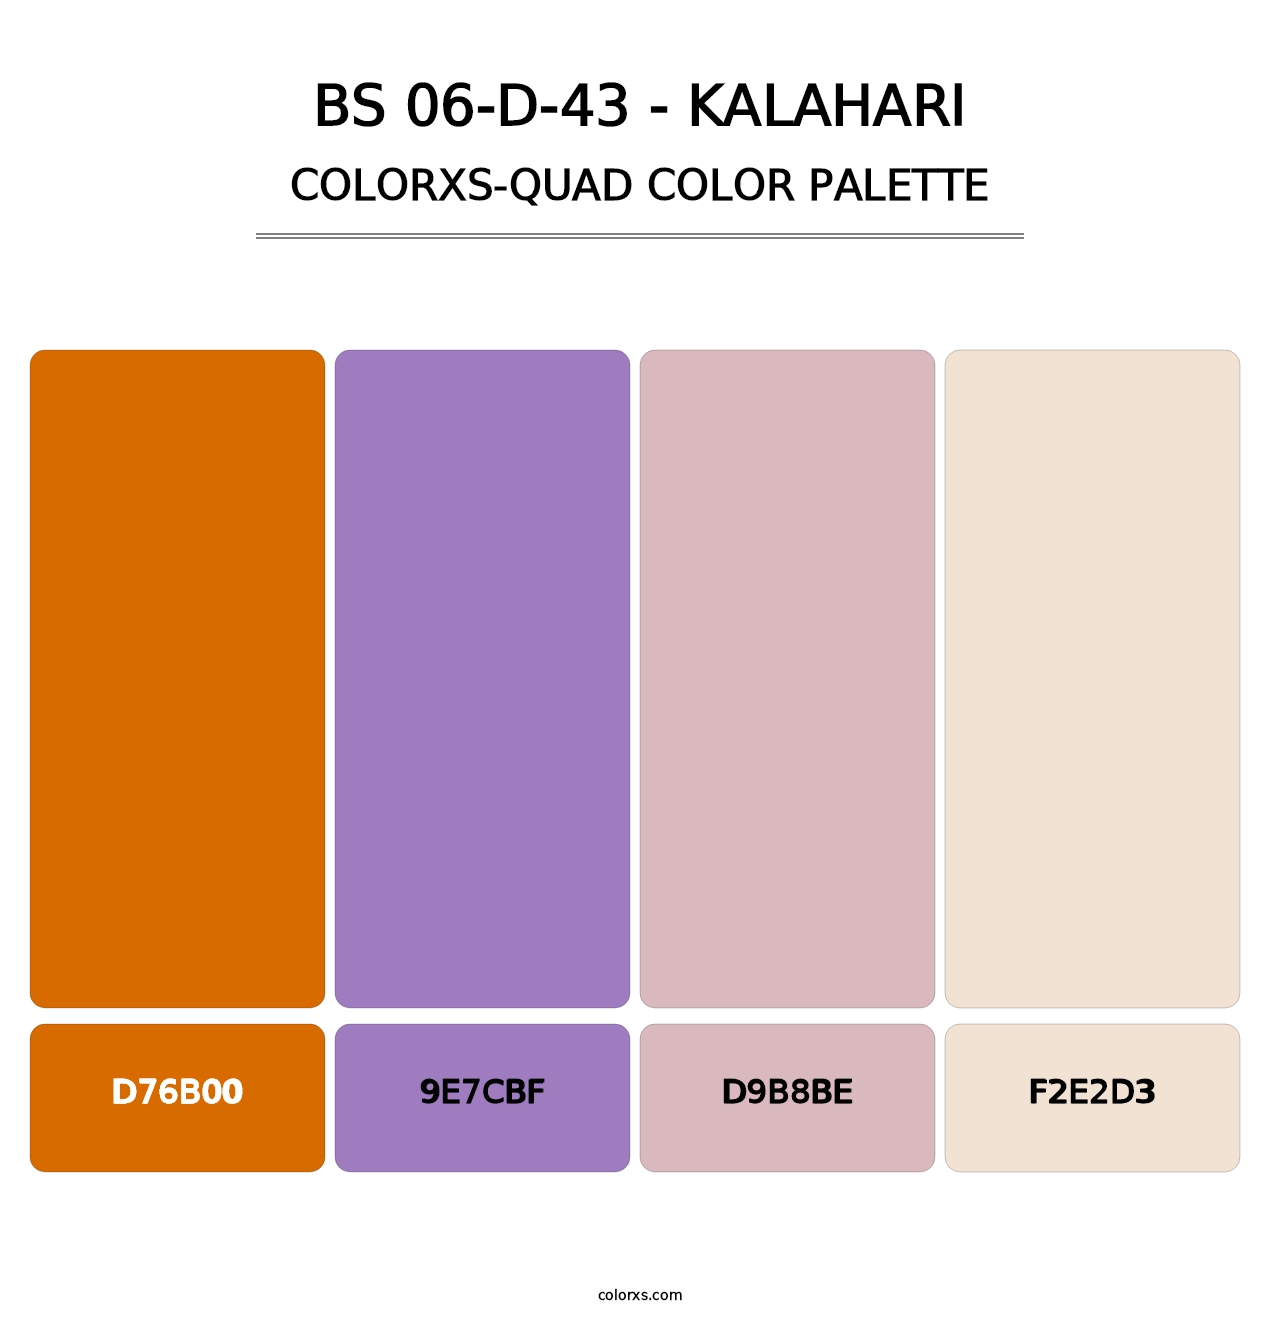 BS 06-D-43 - Kalahari - Colorxs Quad Palette